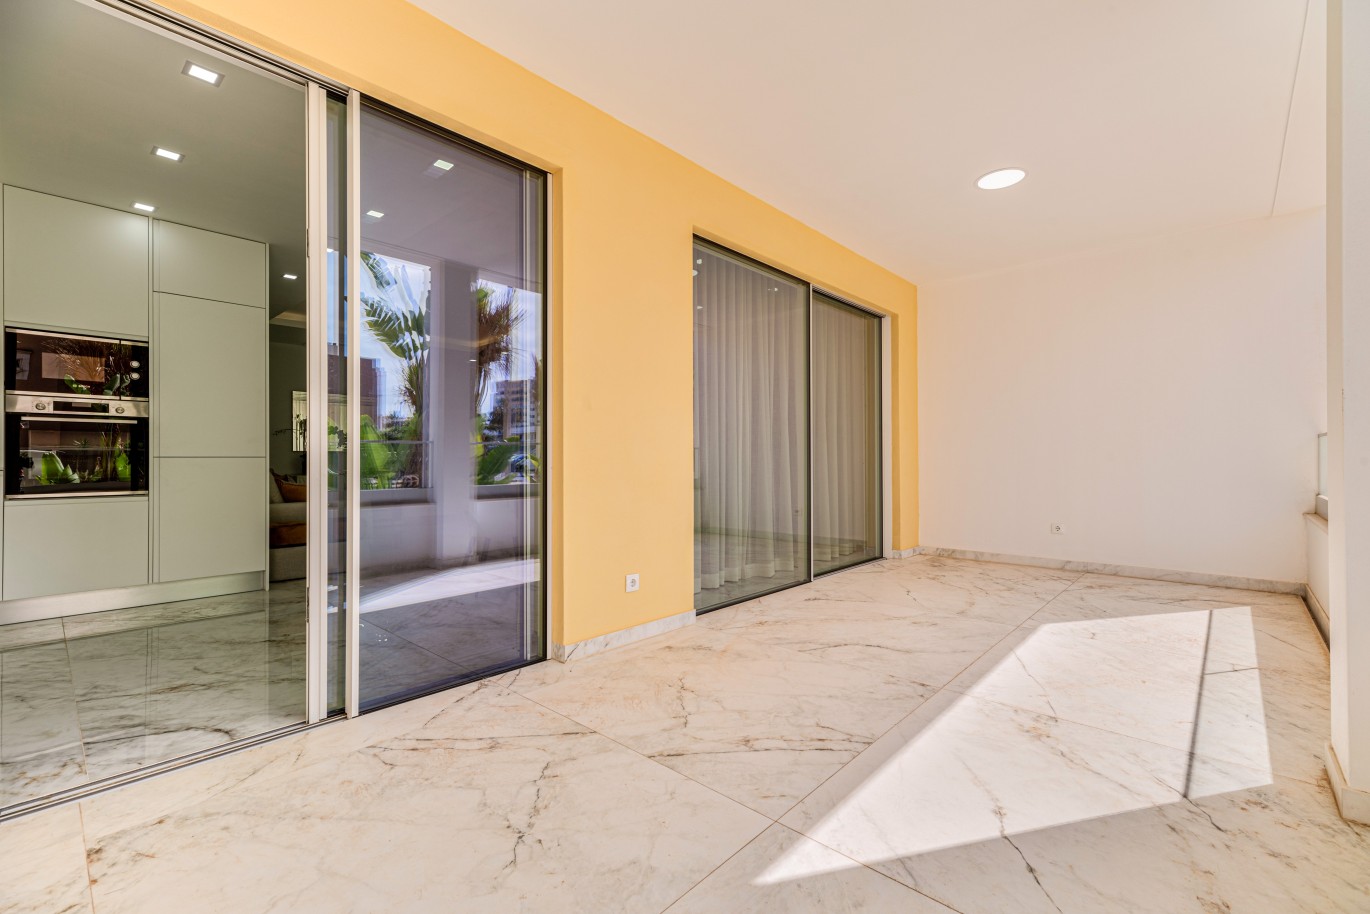 Apartamento, com terraço, para venda, em Lagos, Algarve_237997